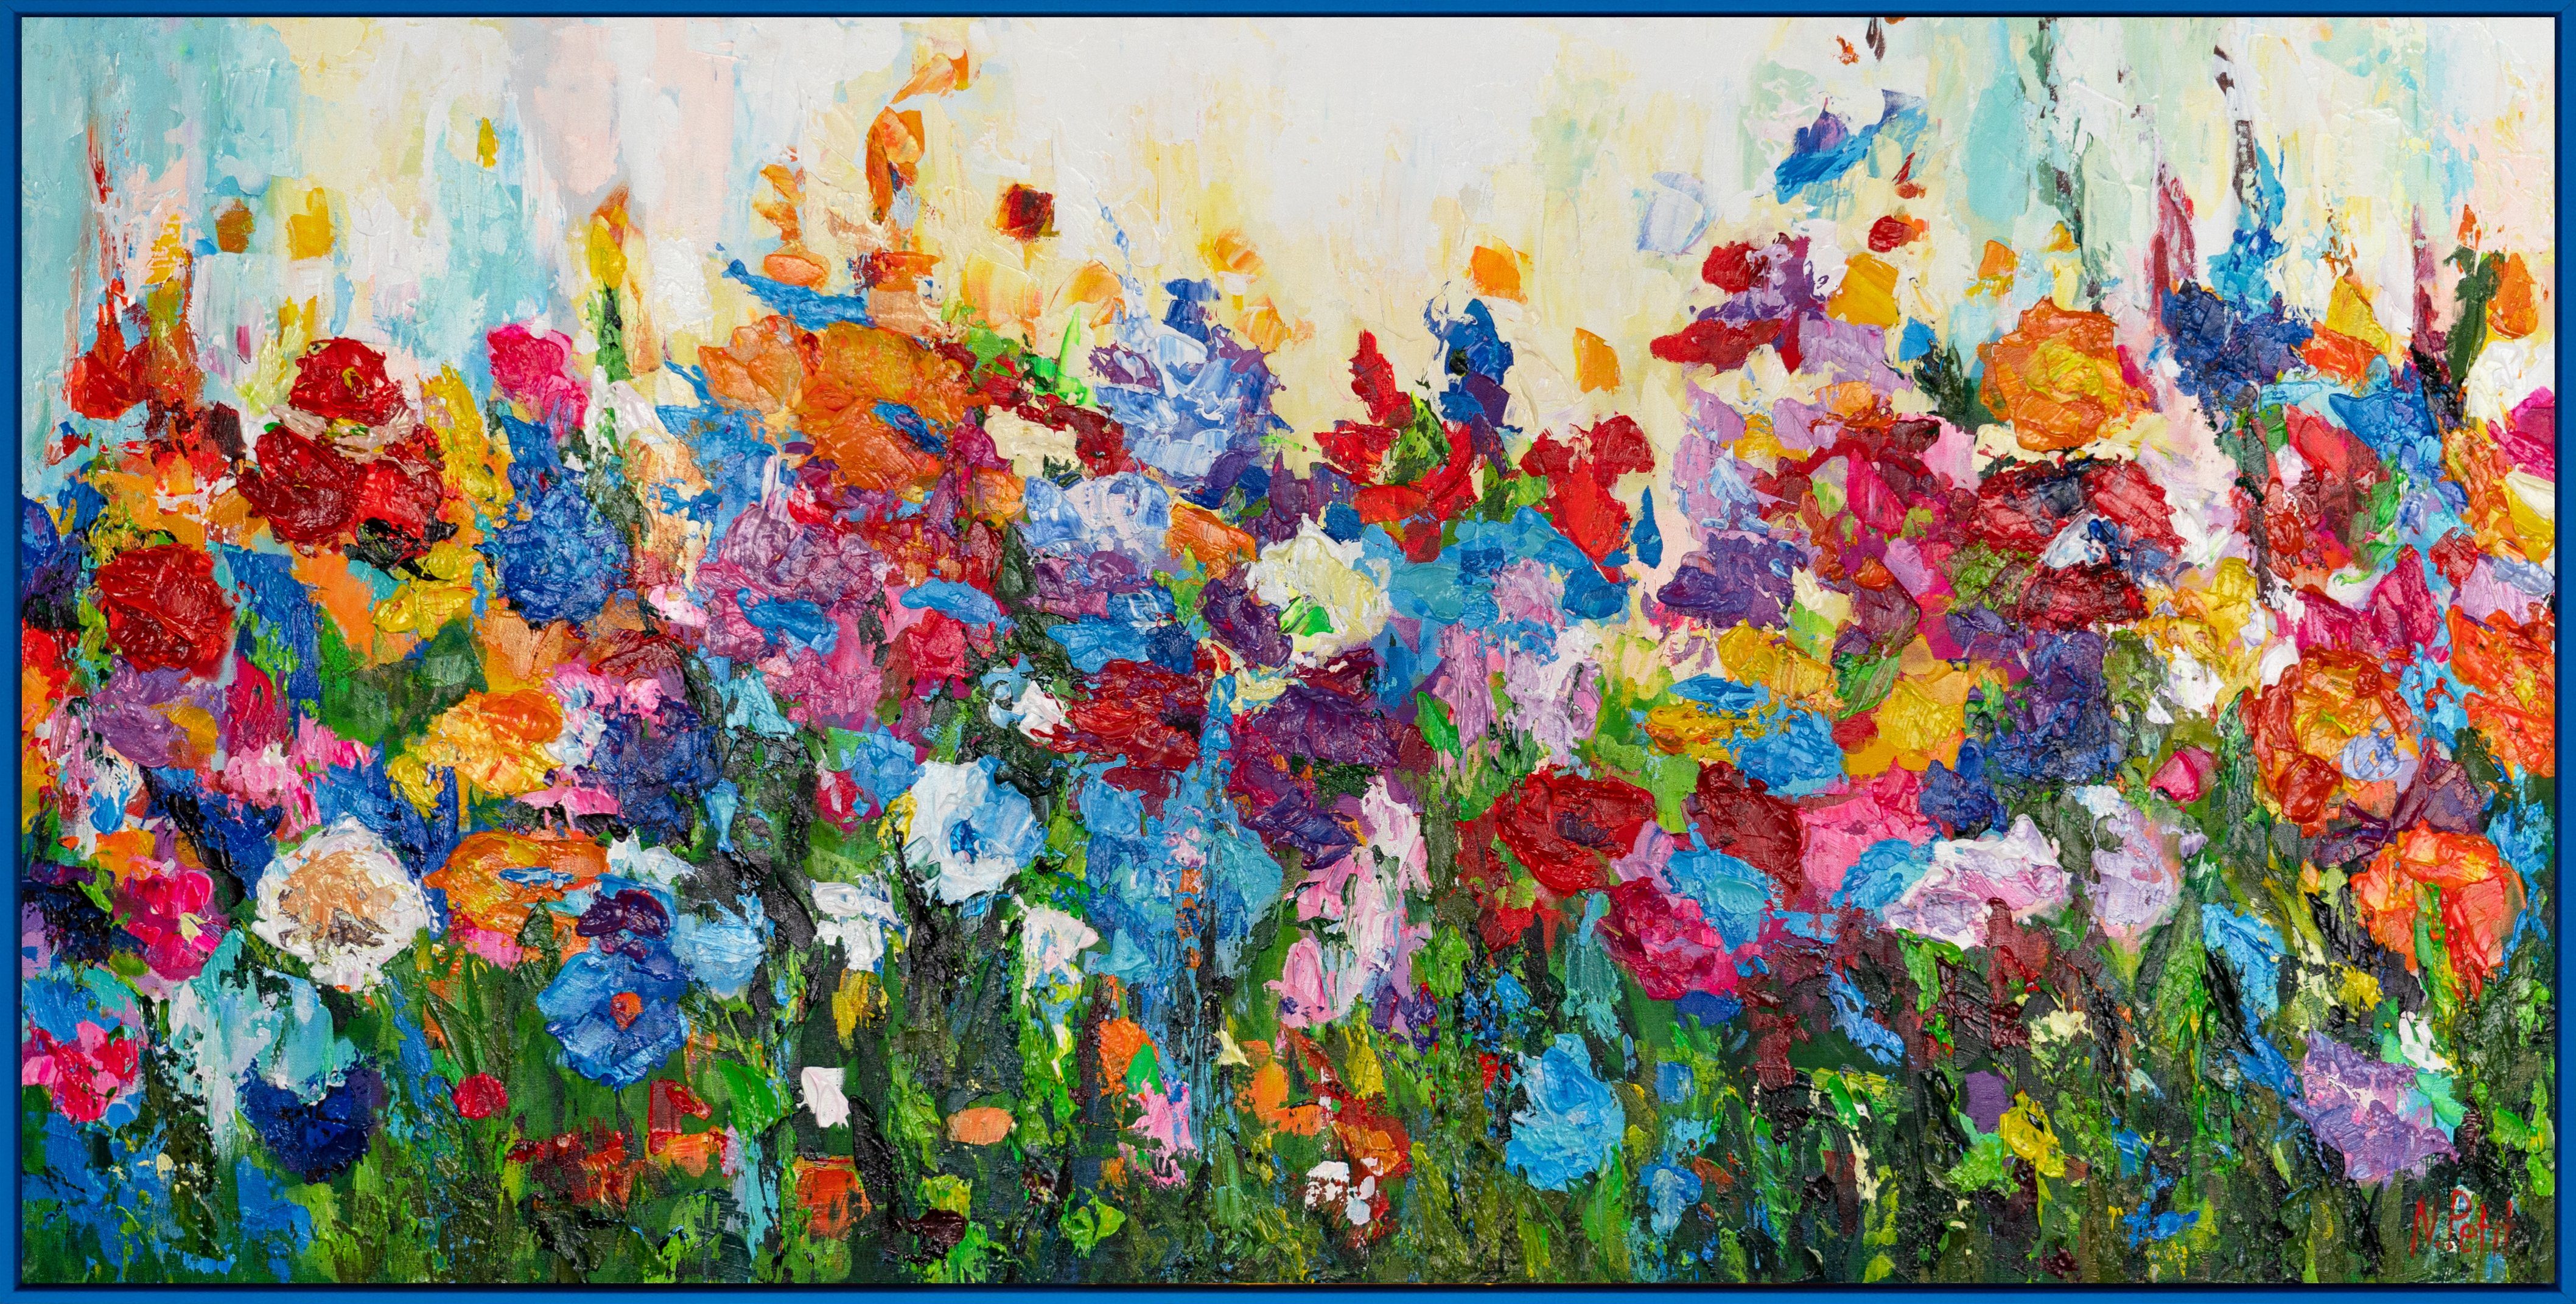 YS-Art Gemälde Blumen in Mit Blau Rahmen Blumige Farben